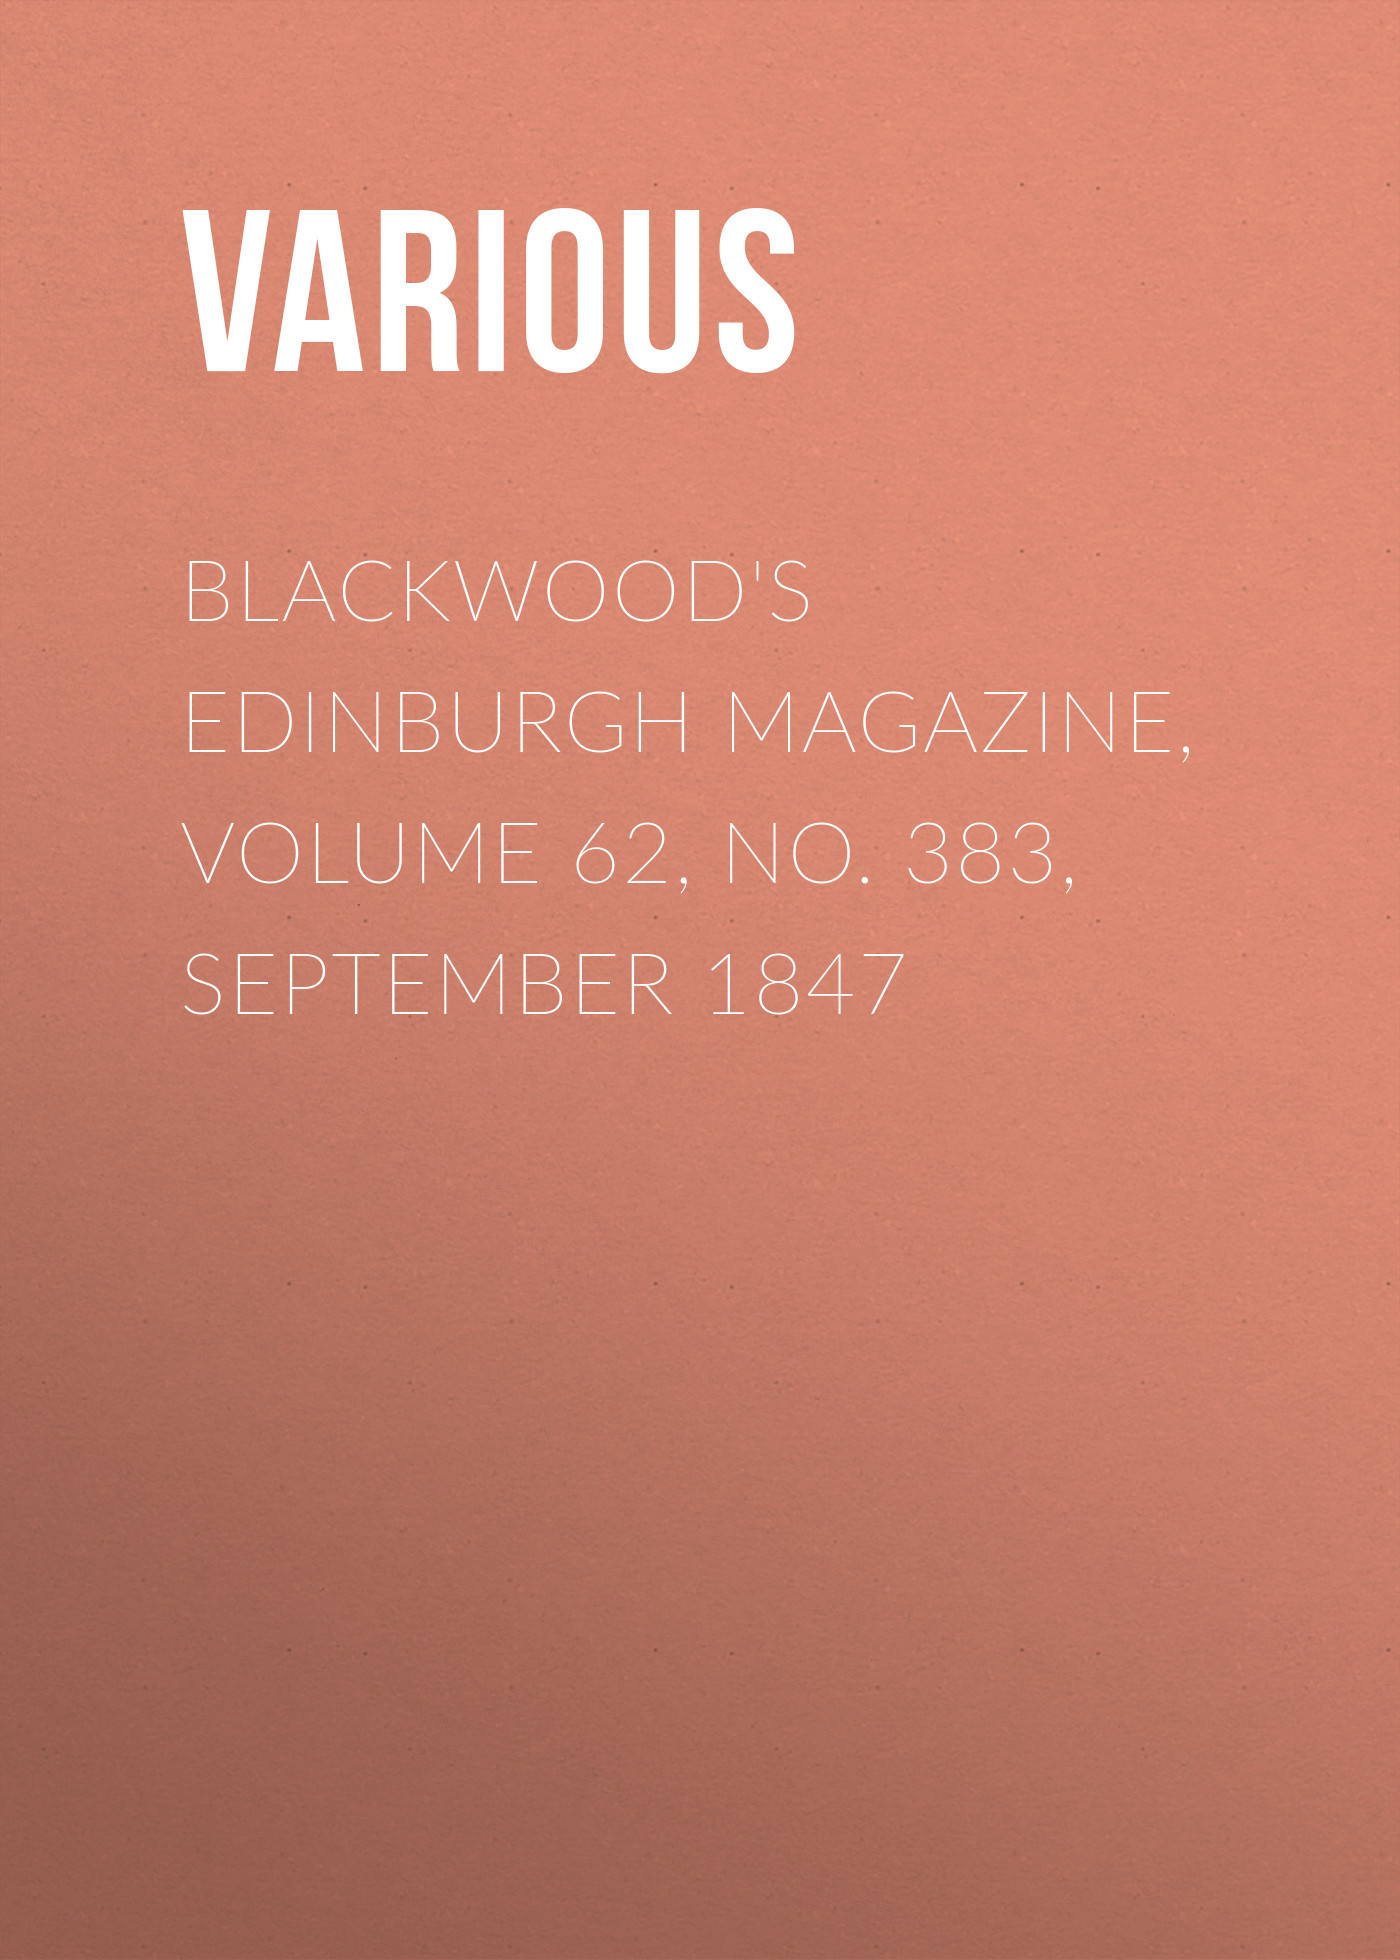 Книга Blackwood's Edinburgh Magazine, Volume 62, No. 383, September 1847 из серии , созданная  Various, может относится к жанру Журналы, Зарубежная образовательная литература, Книги о Путешествиях. Стоимость электронной книги Blackwood's Edinburgh Magazine, Volume 62, No. 383, September 1847 с идентификатором 25571023 составляет 0 руб.